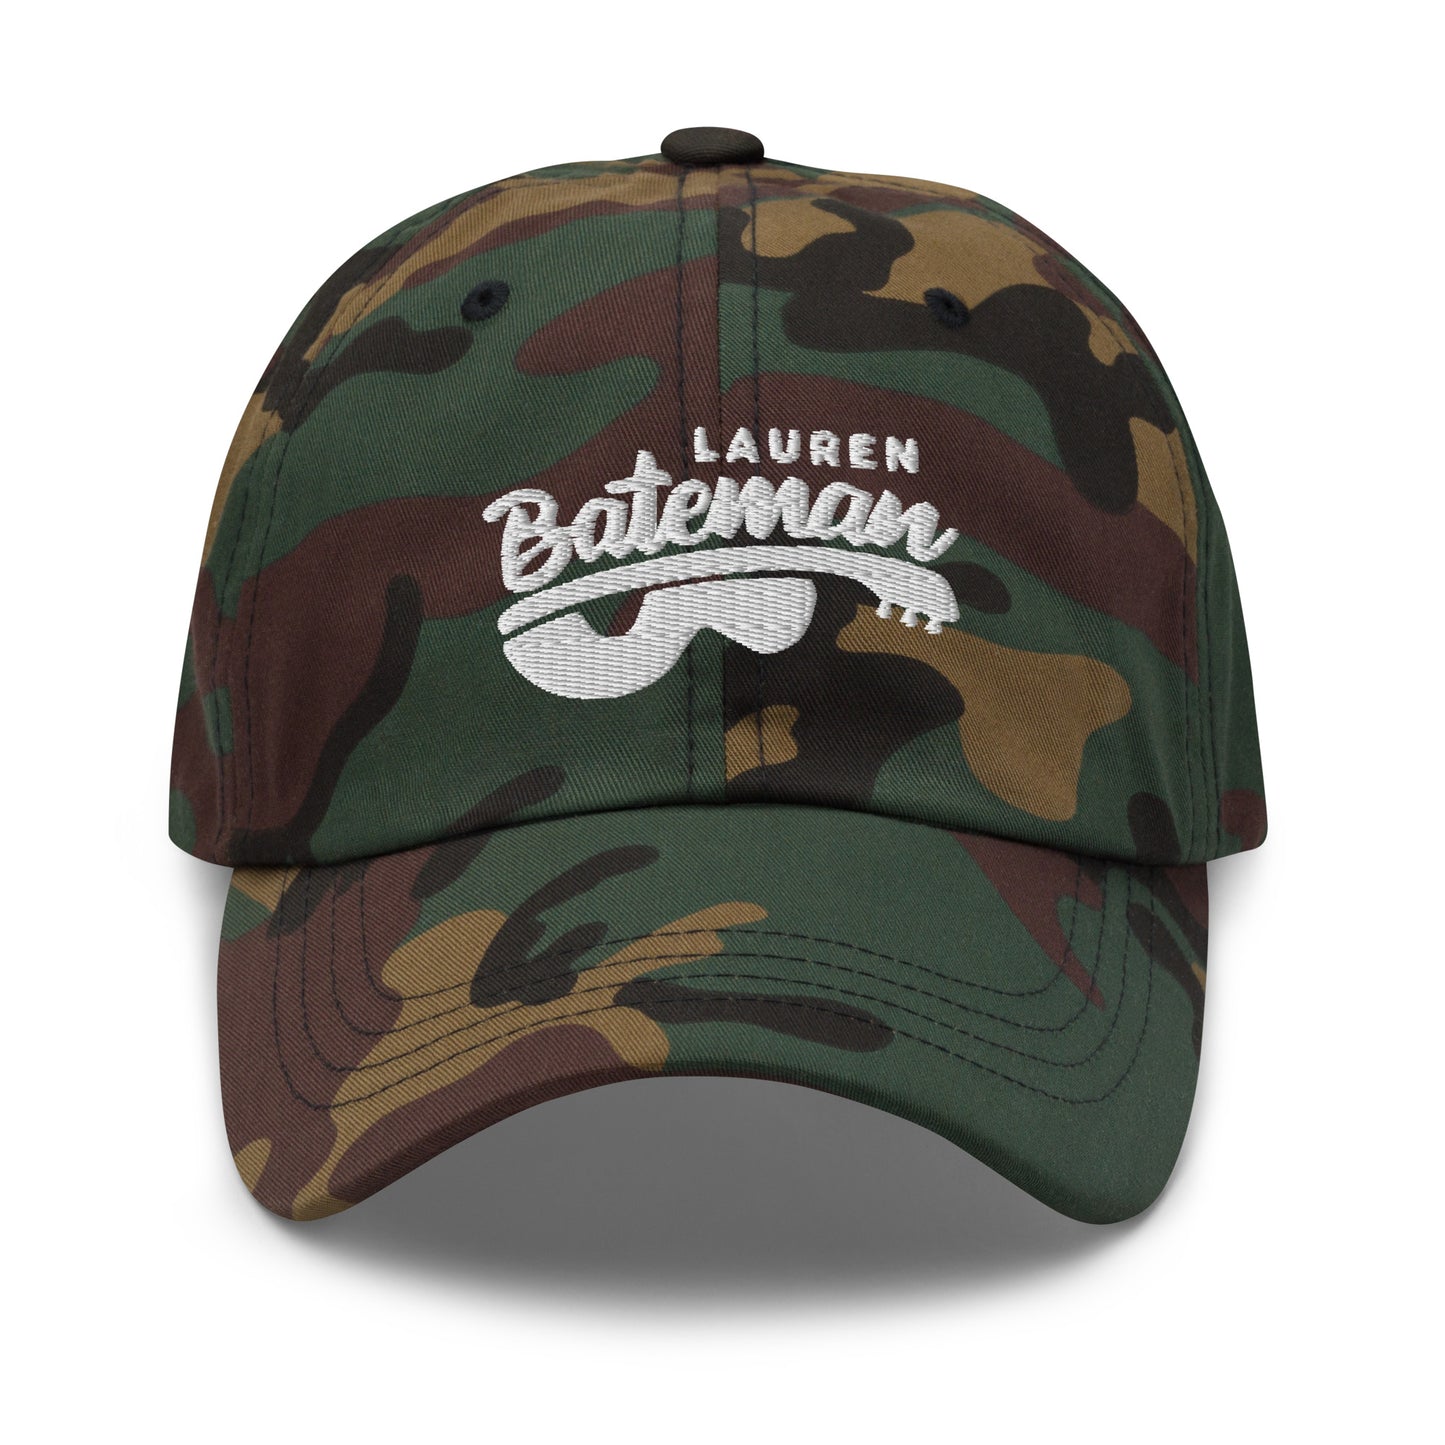 Lauren Bateman - Dad hat